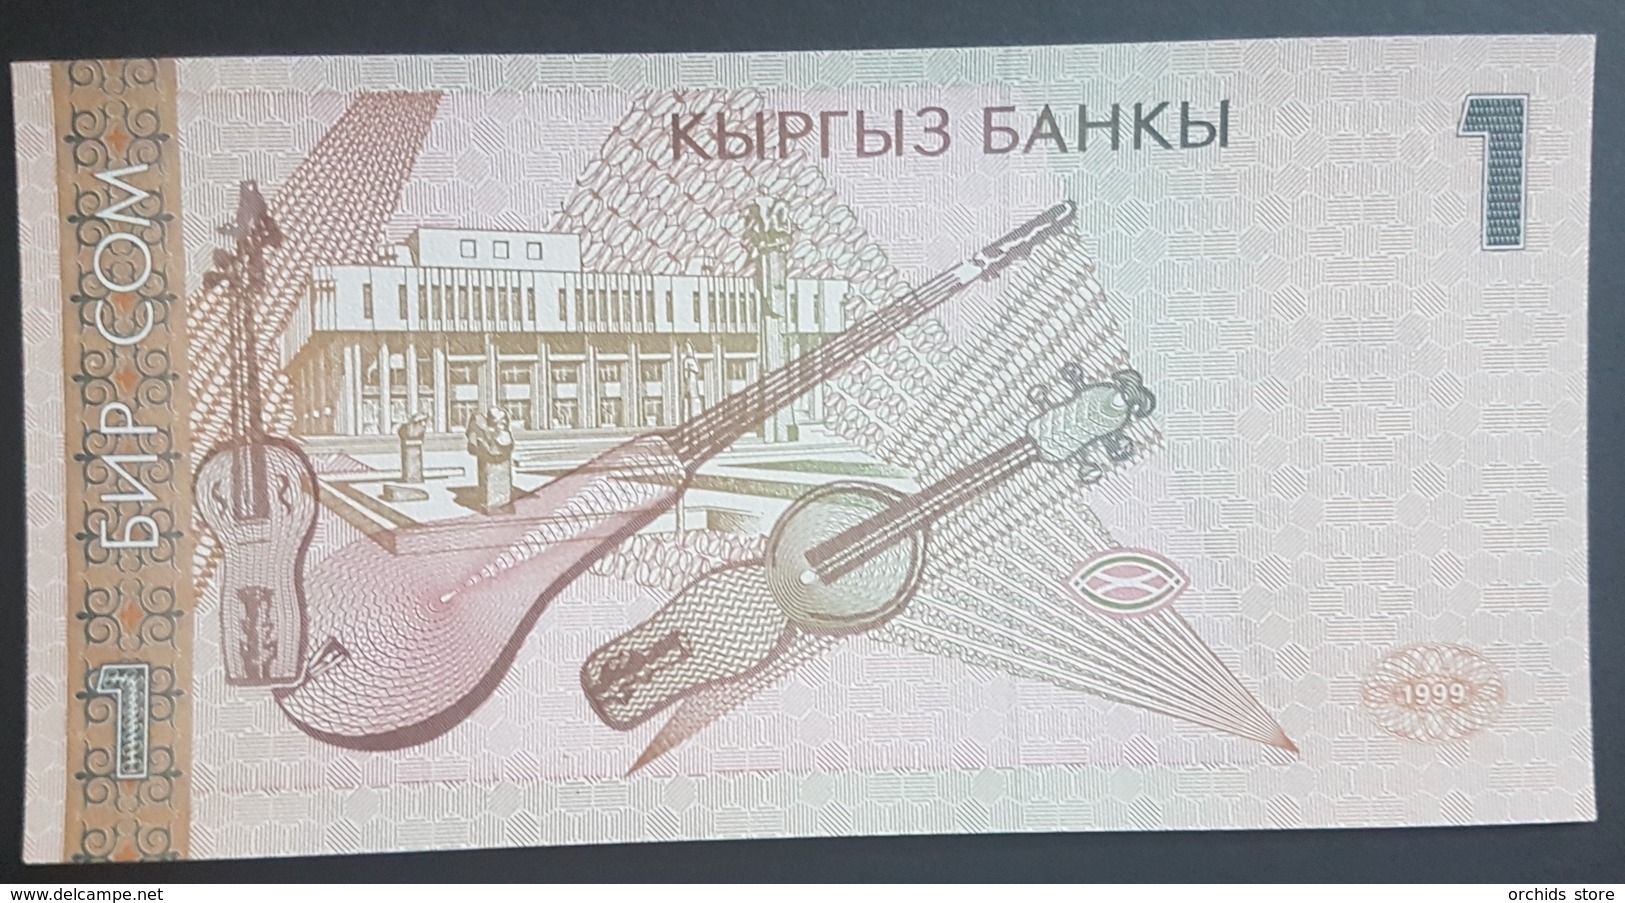 E11g2 - Kyrgyzstan Banknote, 1999, 1 Sum, P-15, UNC - Kirgisistan